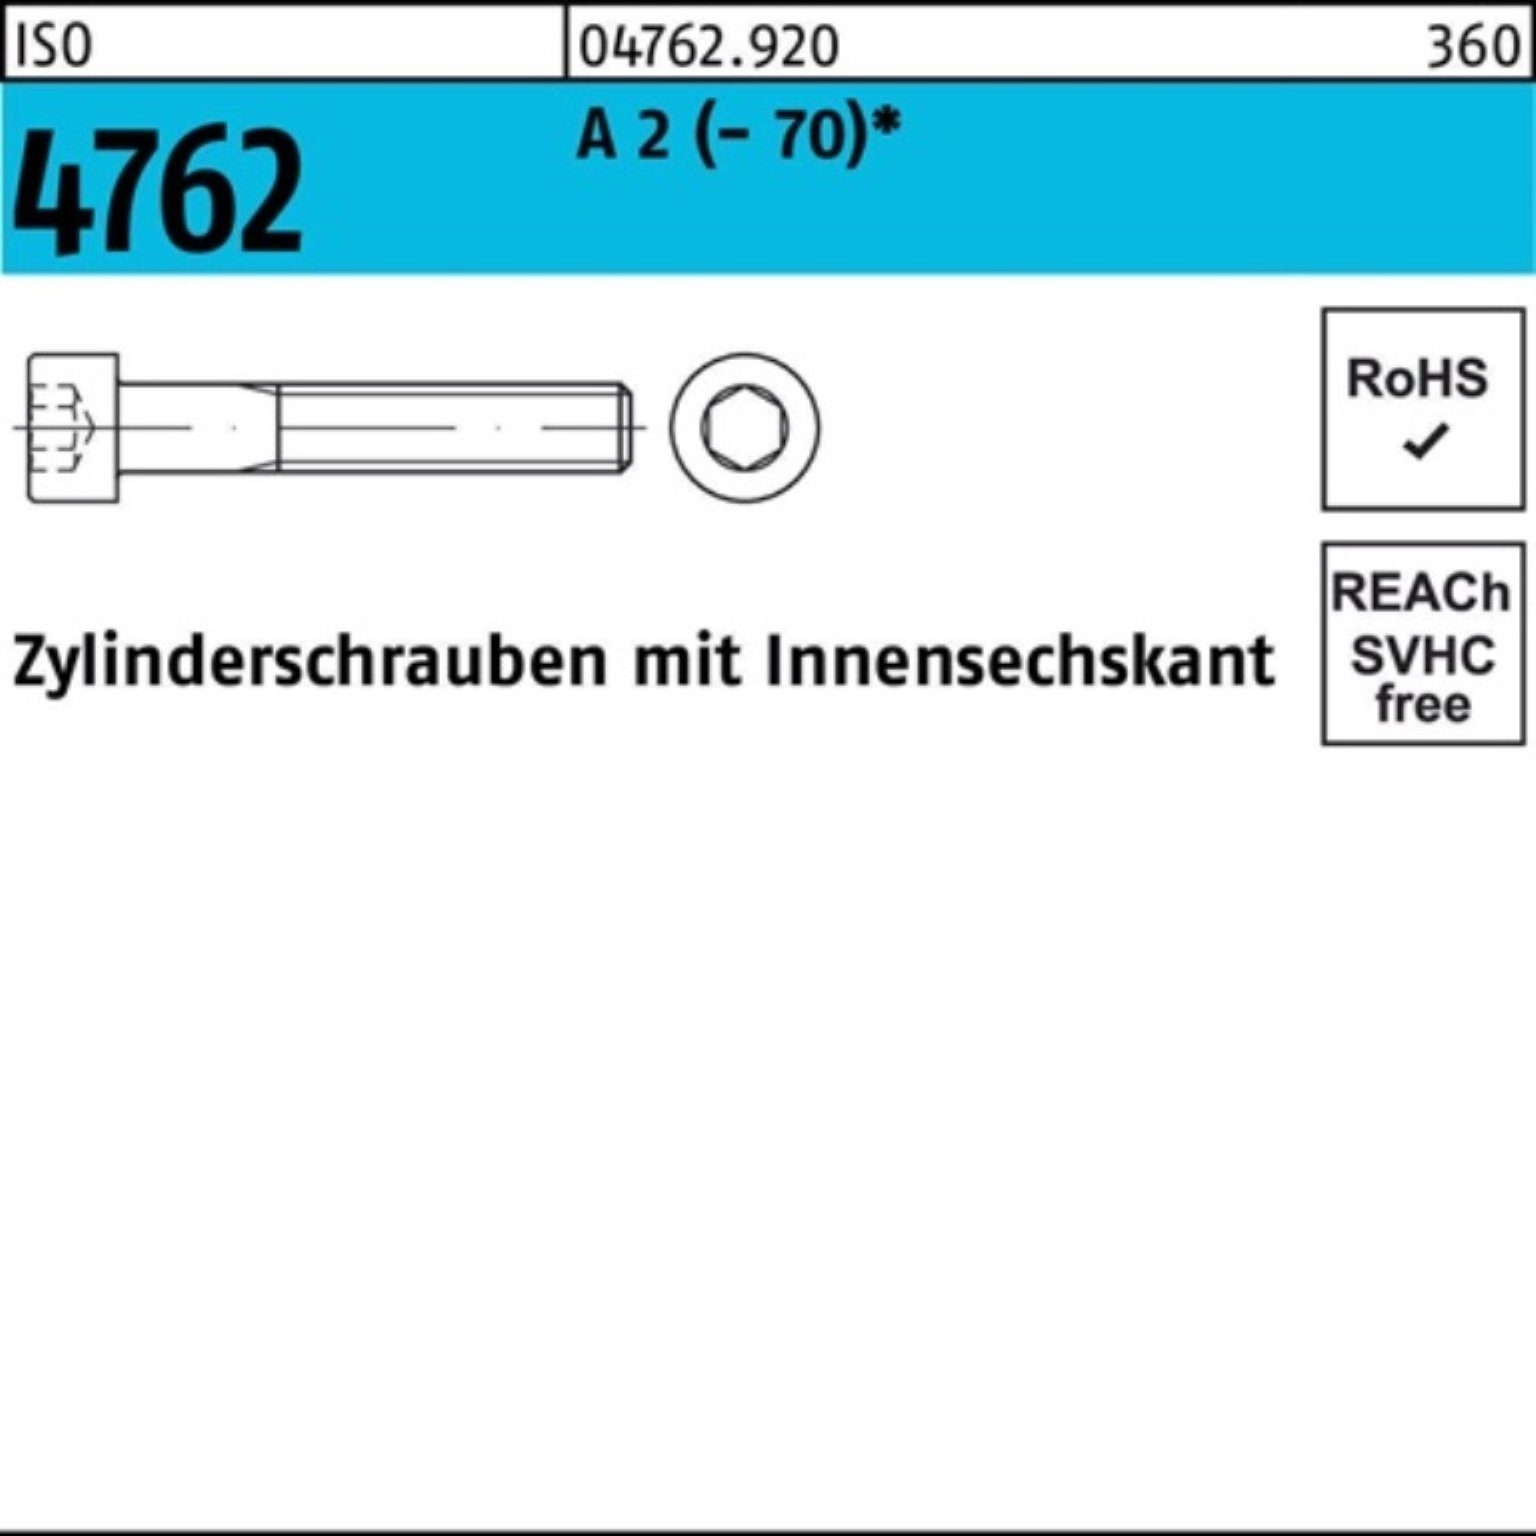 Reyher Zylinderschraube 100er (70) 100 Zylinderschraube A M10x 4762 60 ISO Pack 2 Innen-6kt